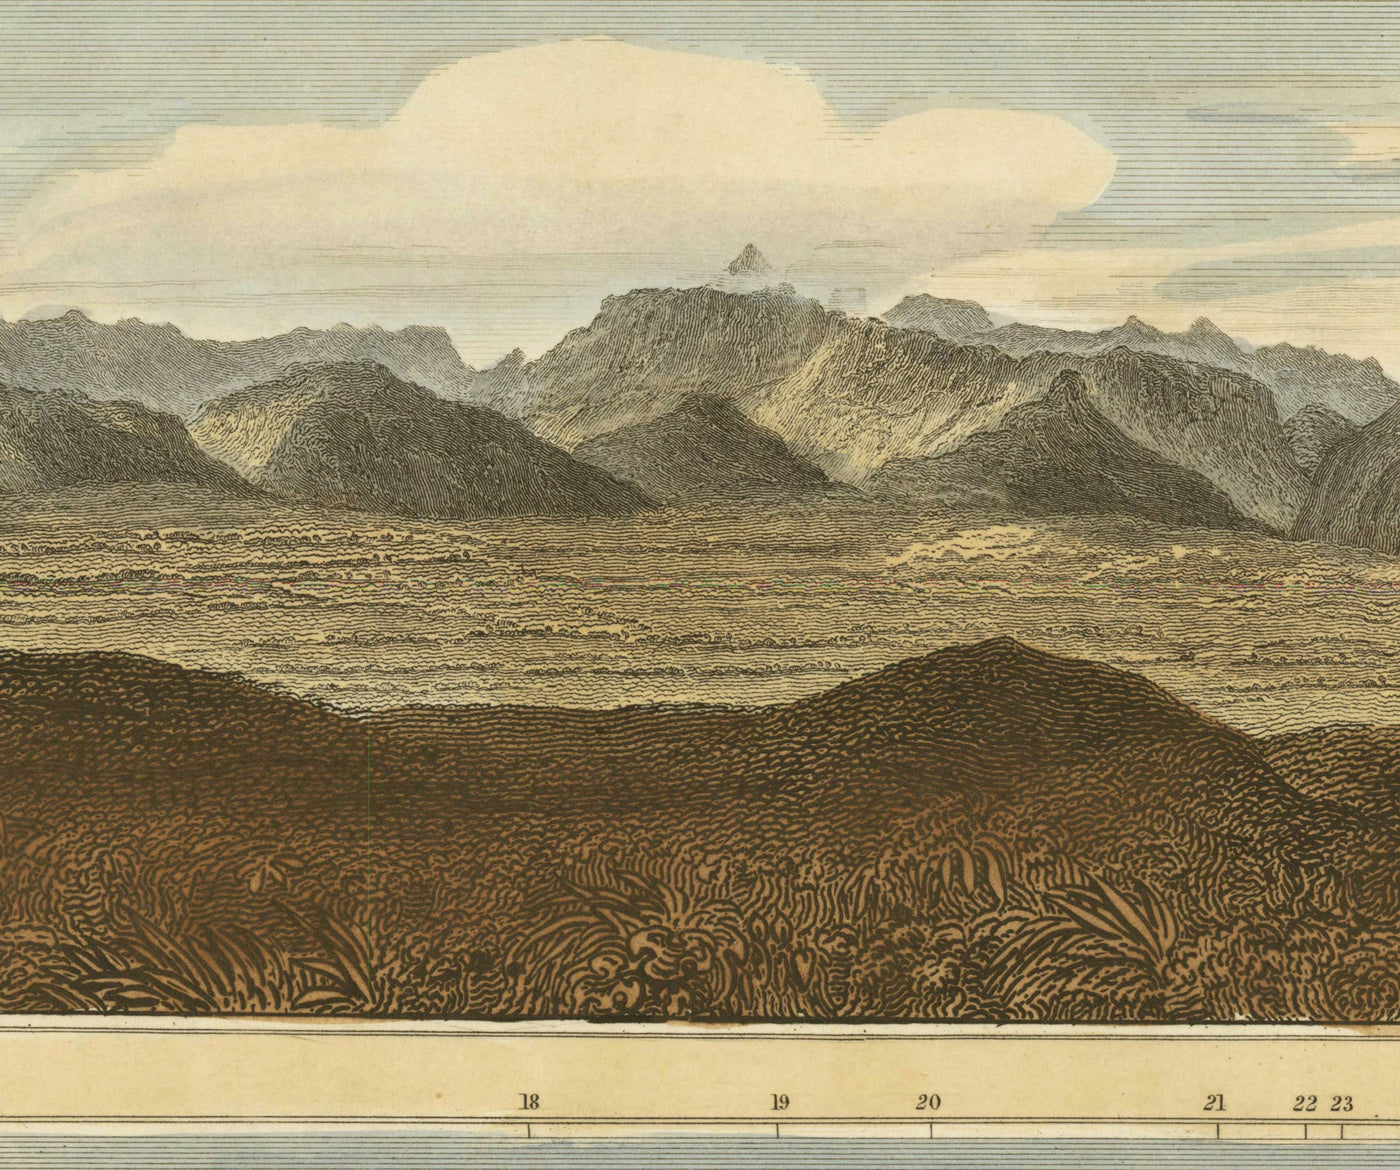 Antiguo mapa de las colinas de Escocia en 1832 por John Thomson - The Highlands, Ben Nevis, Loch na Garr, Cairngorms, Ben Macdui, Ben Venue